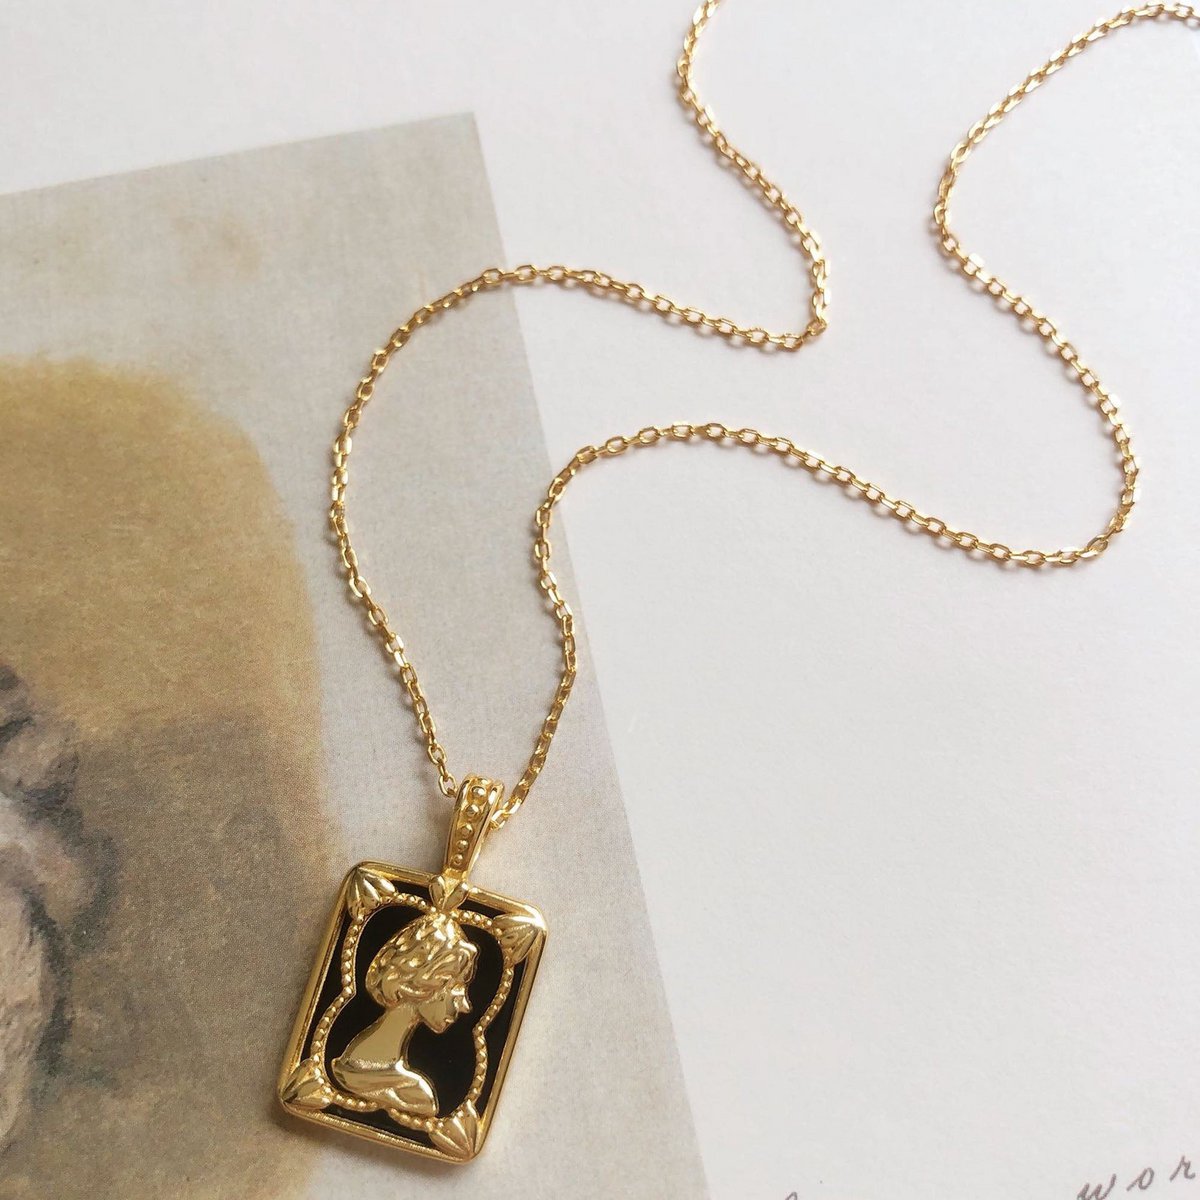 Vintage inspired Gold vermeil Queen portrait pendant necklace